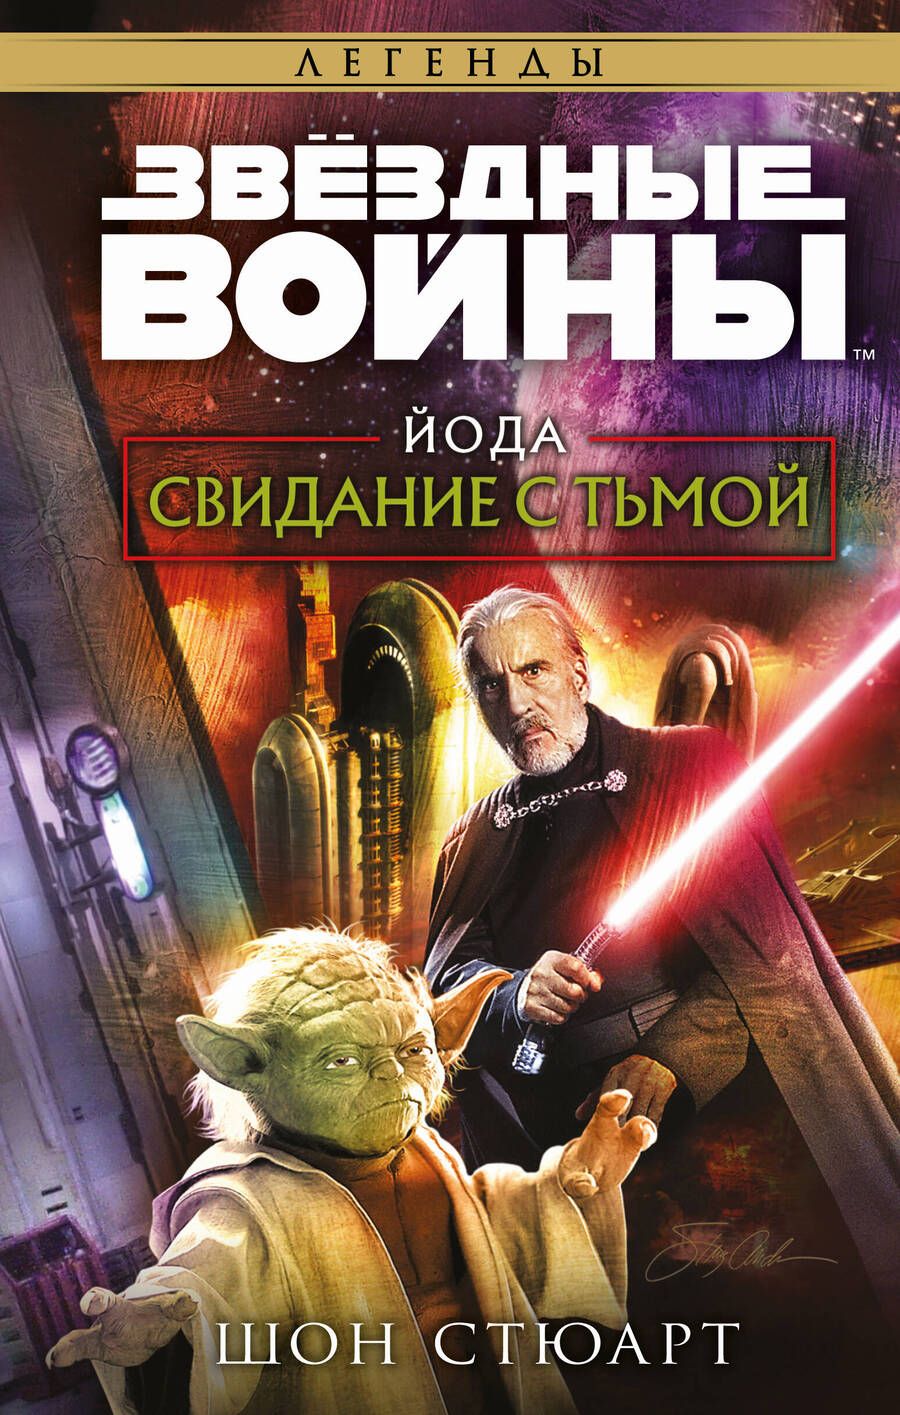 Обложка книги "Стюарт: Звёздные войны. Йода. Свидание с тьмой"